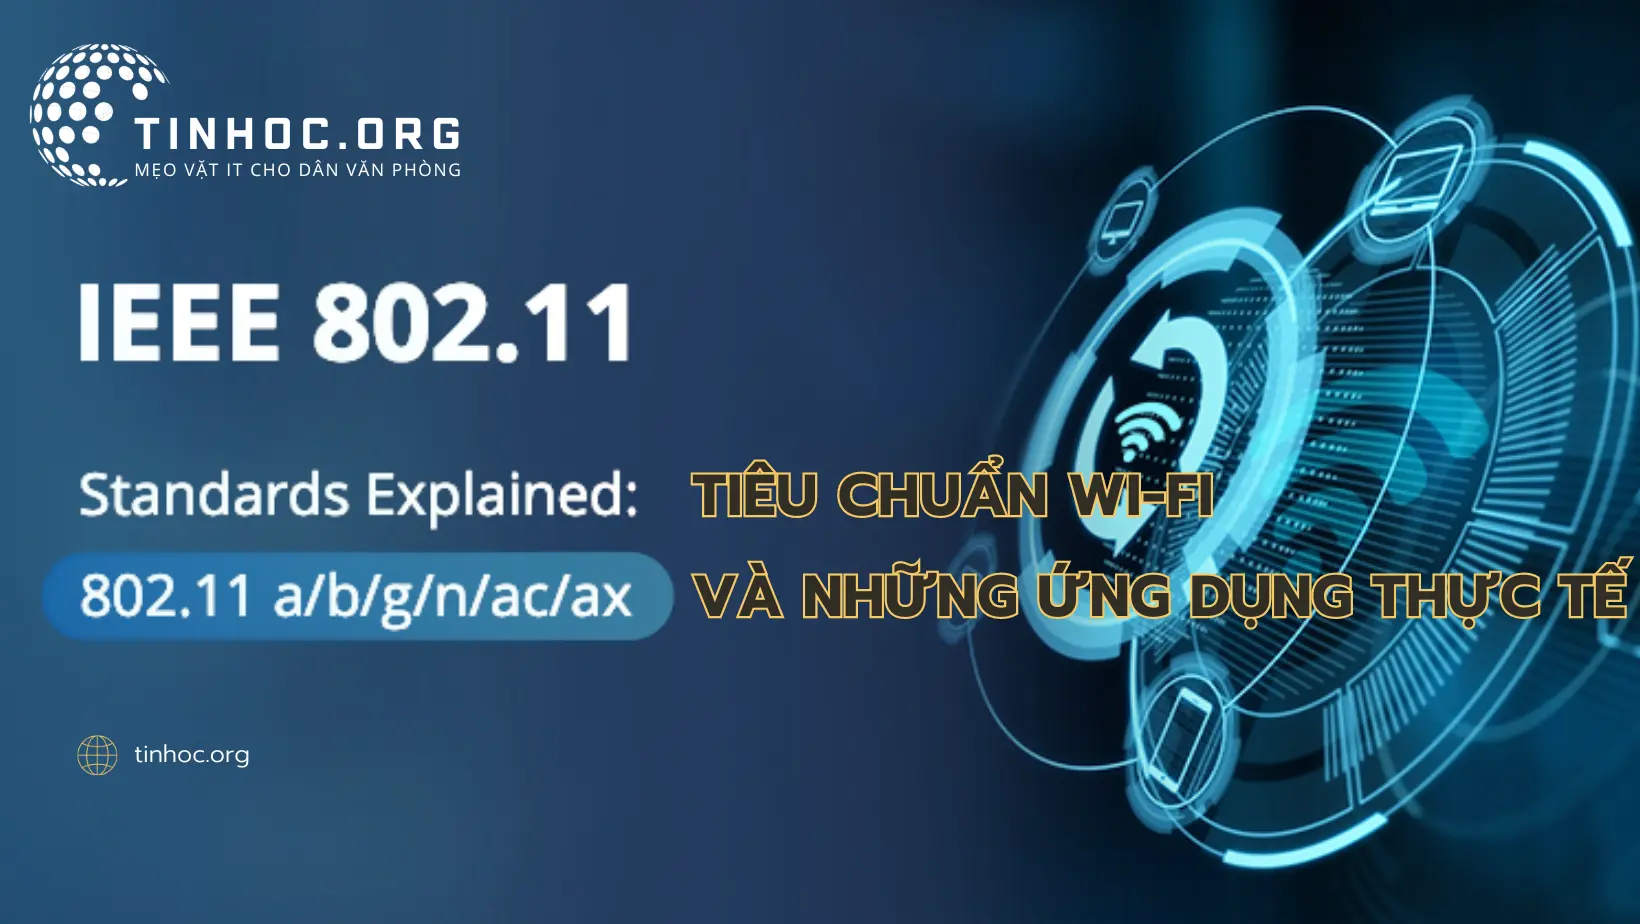 IEEE 802.11 là một tiêu chuẩn truyền dẫn không dây (Wi-Fi) định rõ cách thiết bị không dây kết nối với mạng và truyền dữ liệu.